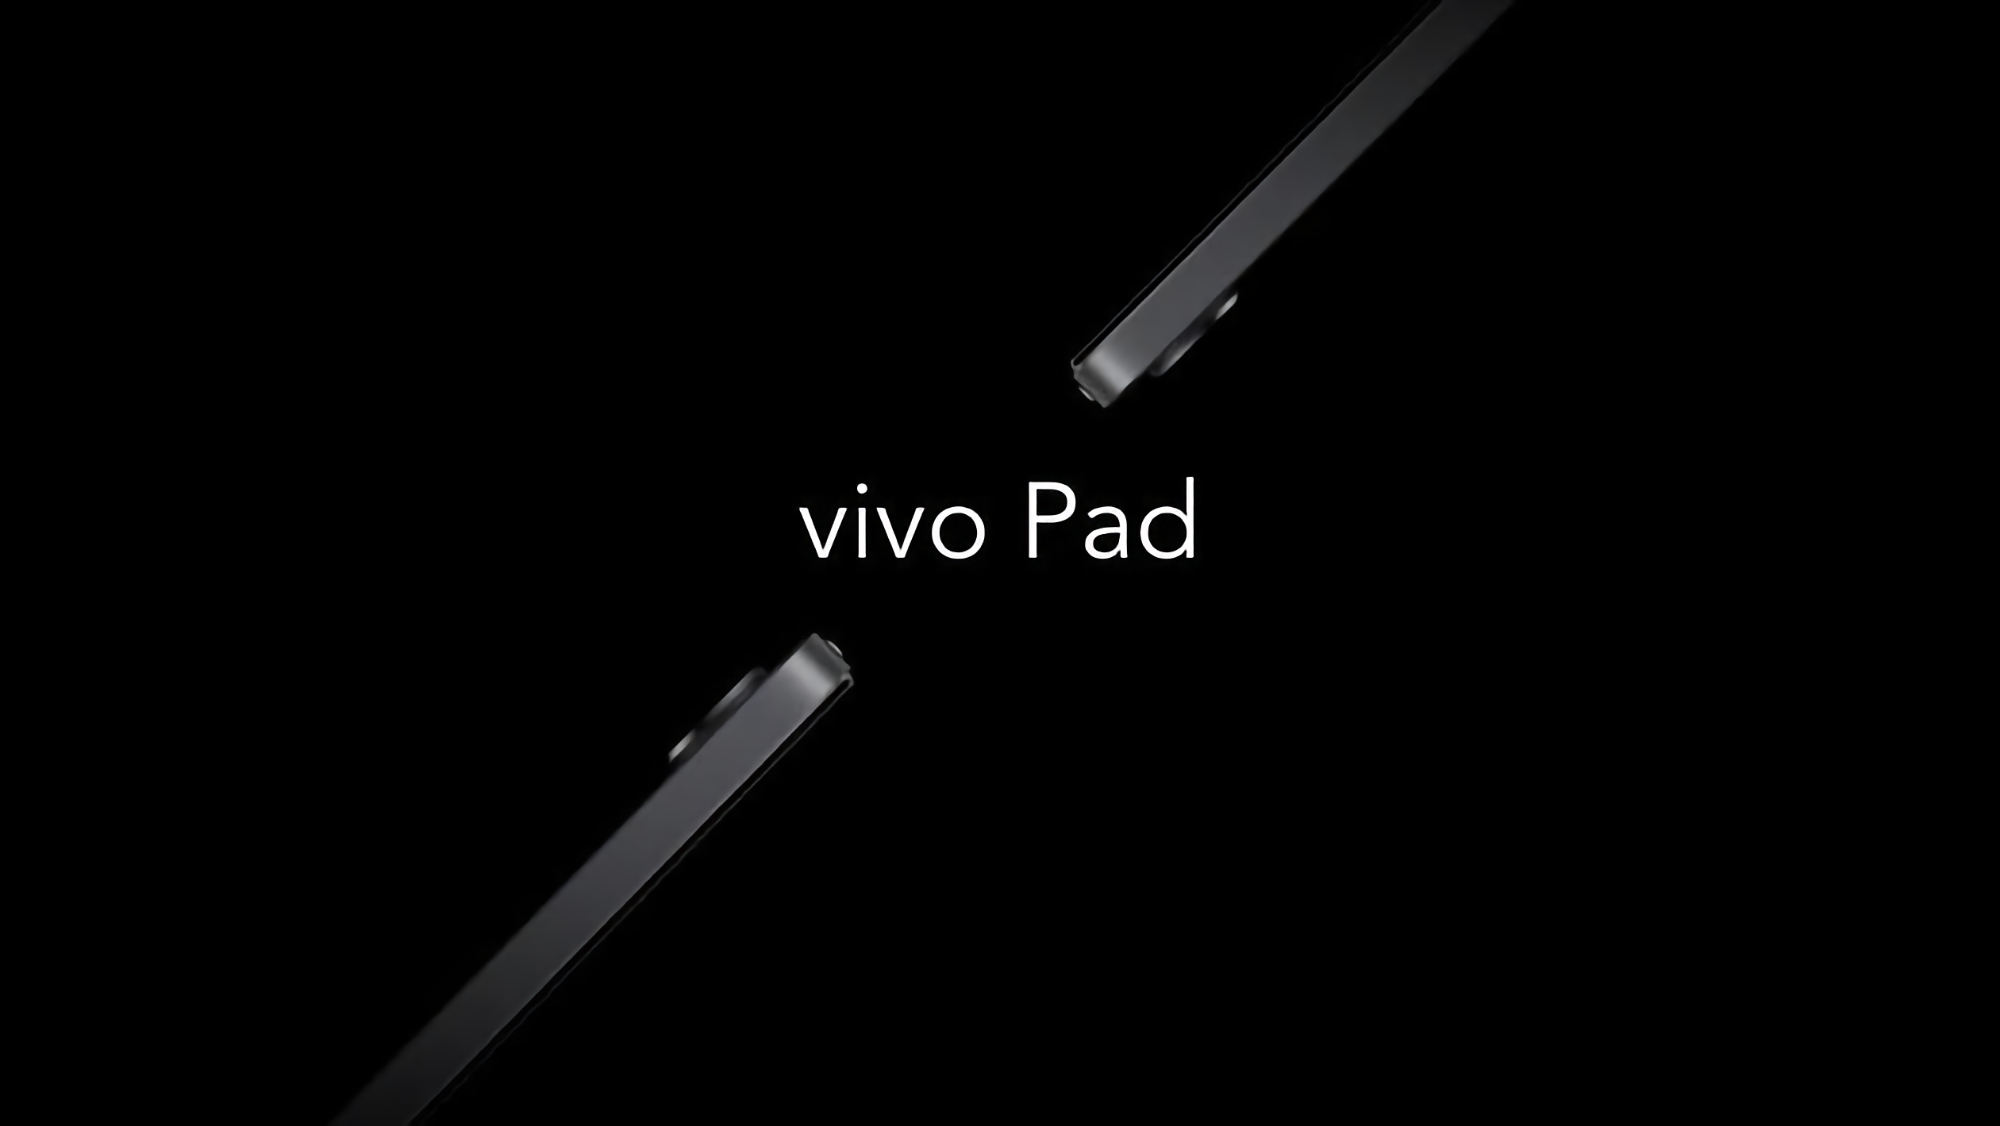 120-Hz-Bildschirm, Snapdragon 870-Chip und 44-W-Schnellladung: Die ersten Tablet-Spezifikationen von Vivo sind online durchgesickert